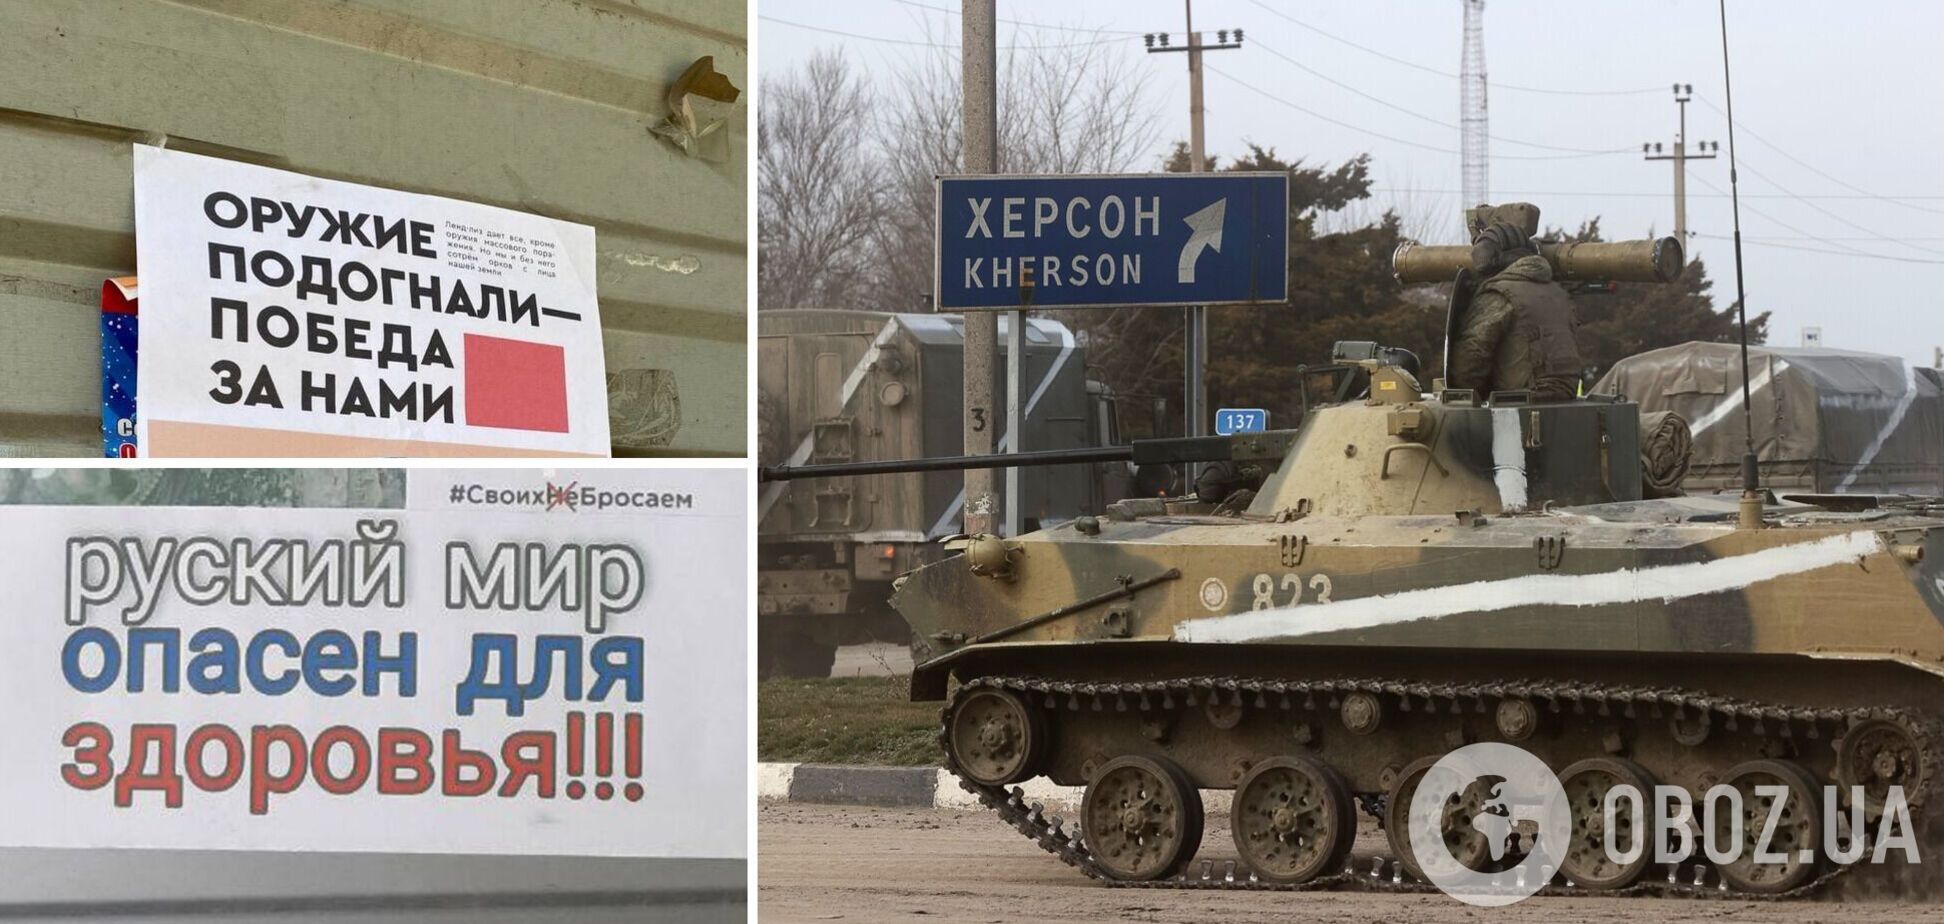 'Русский мир' опасен для здоровья': в Херсоне активизировались украинские 'партизаны'. Фото